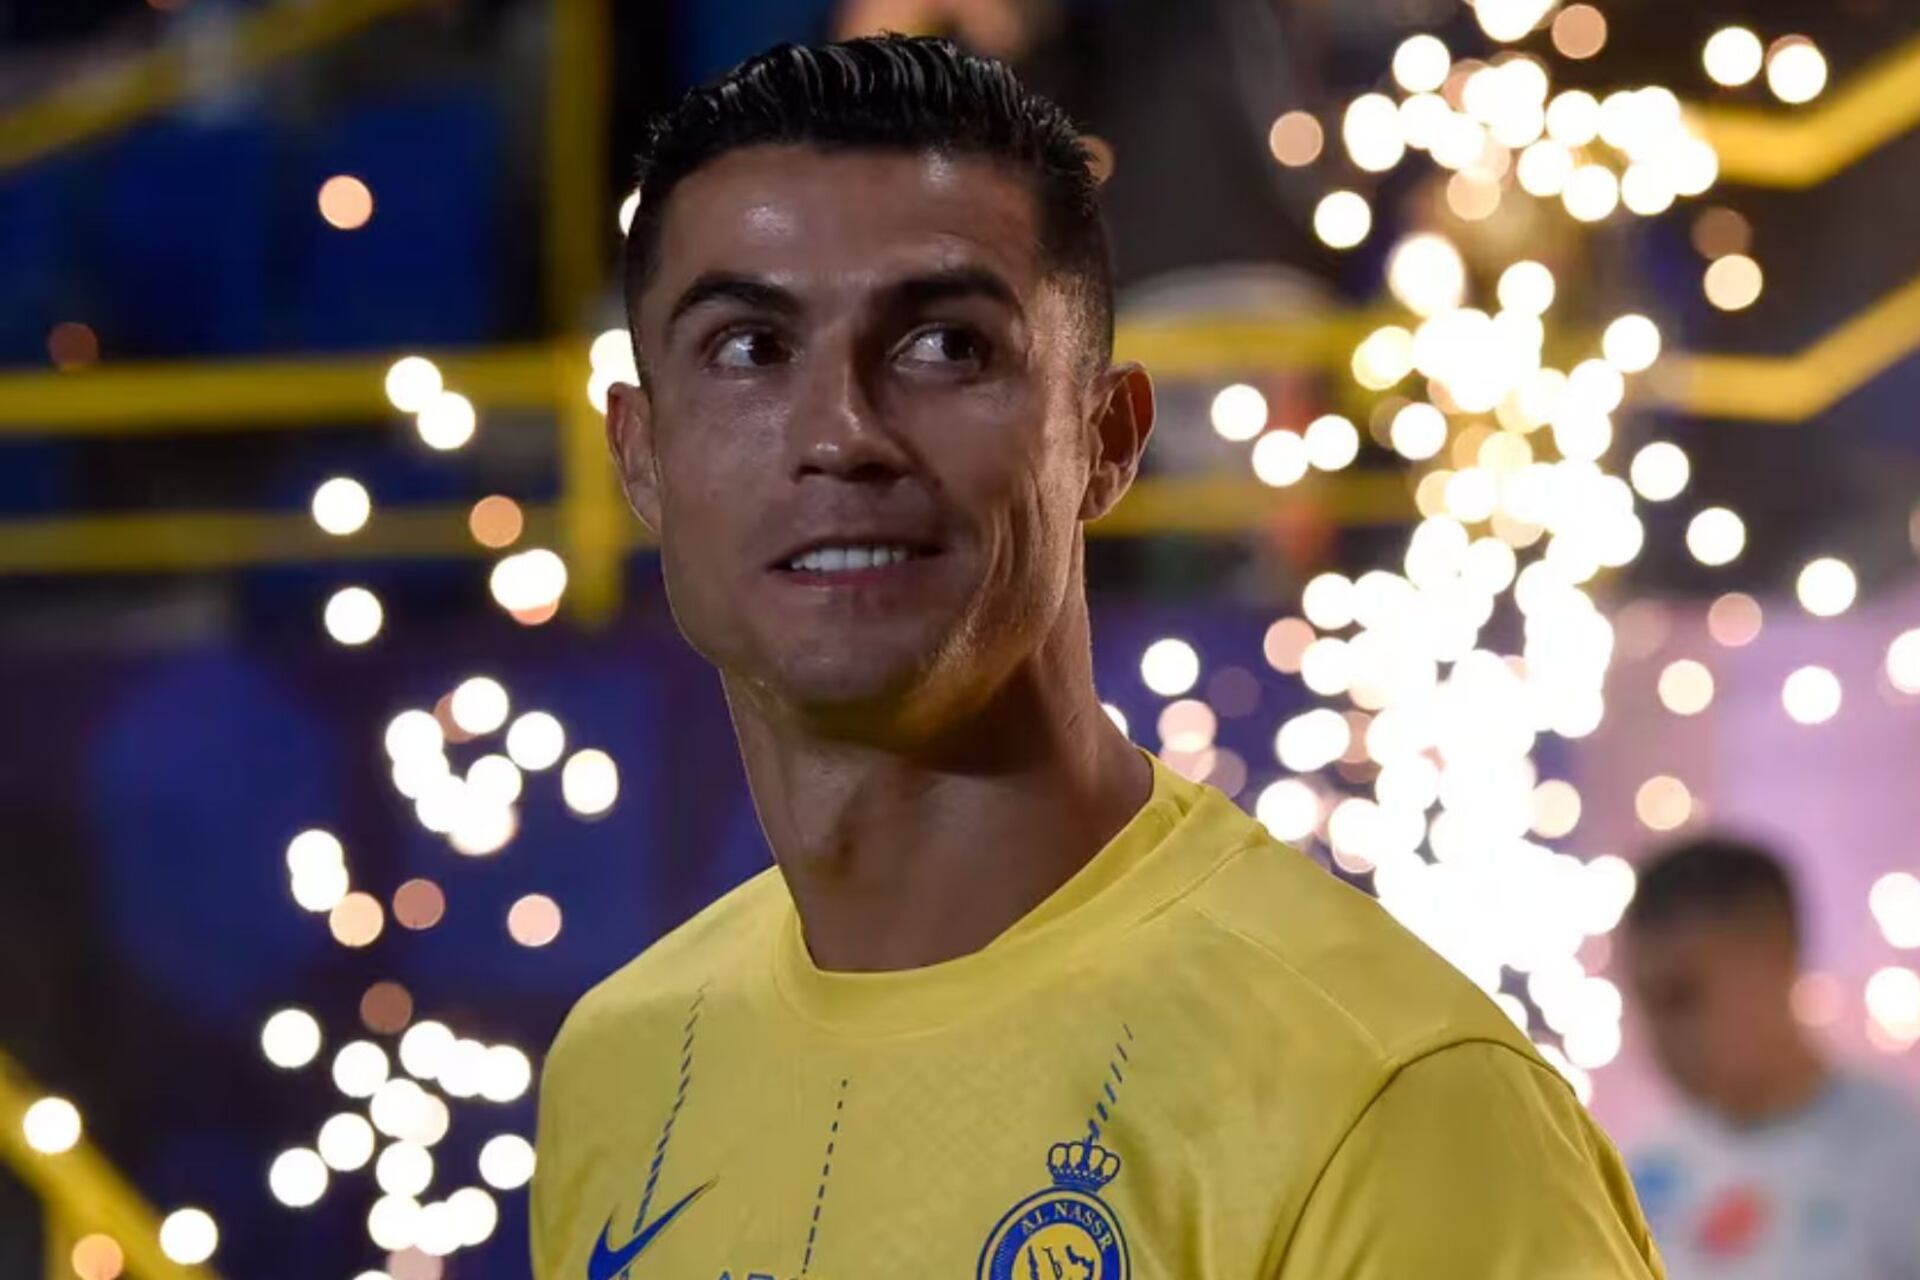 La extraña rutina que tiene Cristiano Ronaldo antes de irse a dormir en Arabia